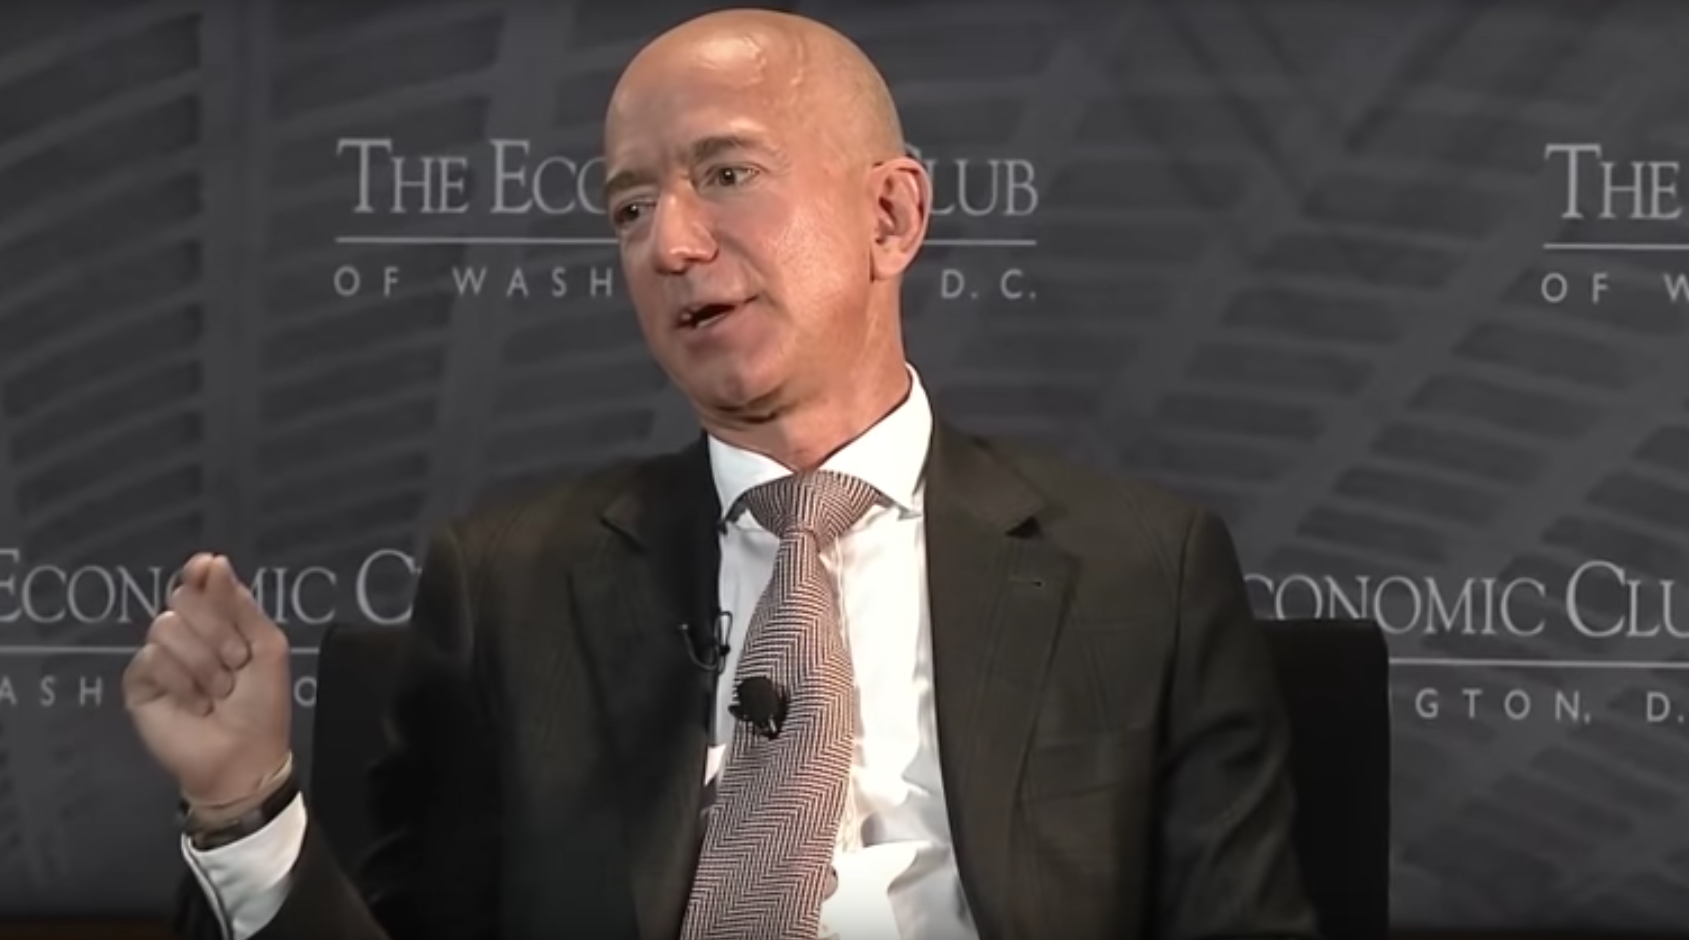 En The Economic Club de Washington DC, el CEO de Amazon anunció su Fondo Primer Día.